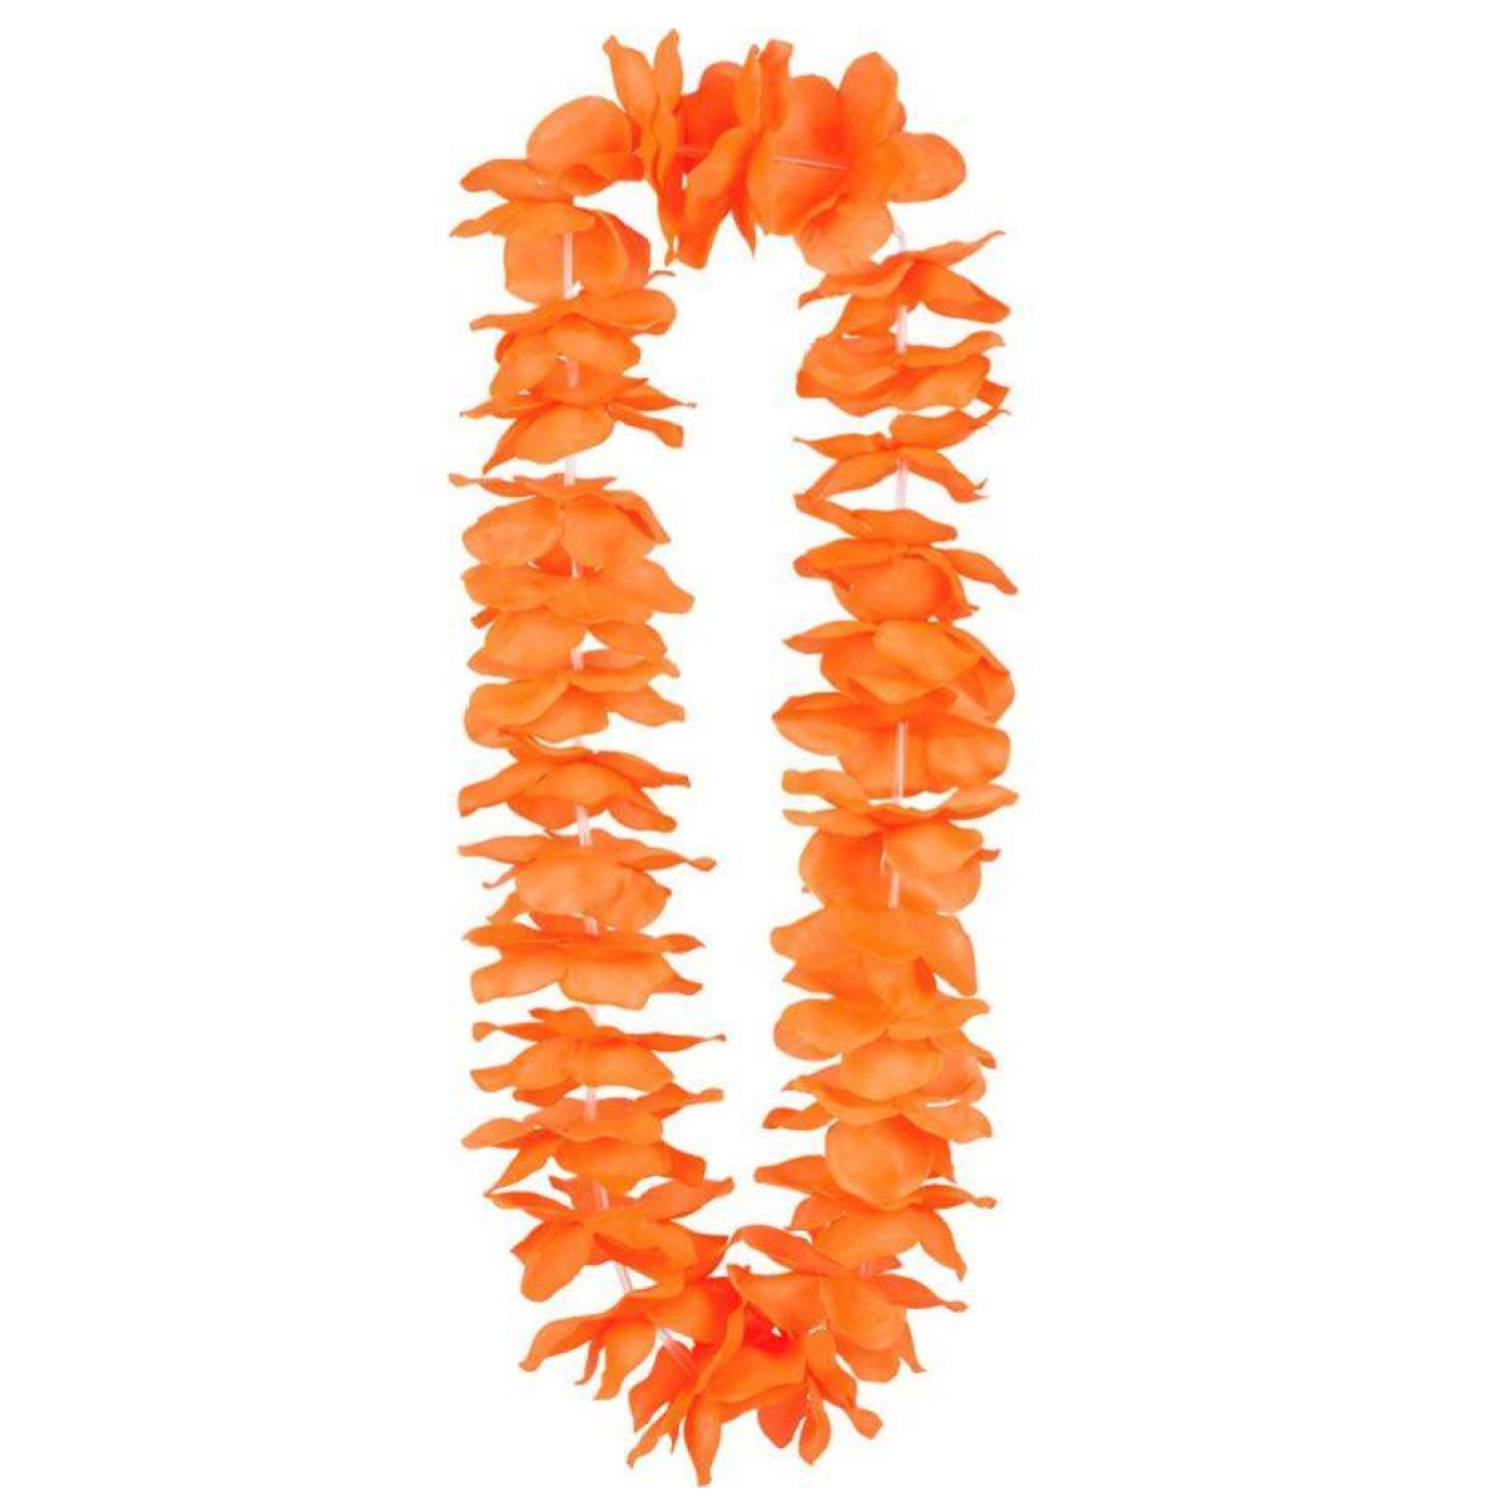 Pakket met 100 stuks Oranje Krans Hawaii | Oranje Feestartikelen | Feestkleding EK/WK Voetbal